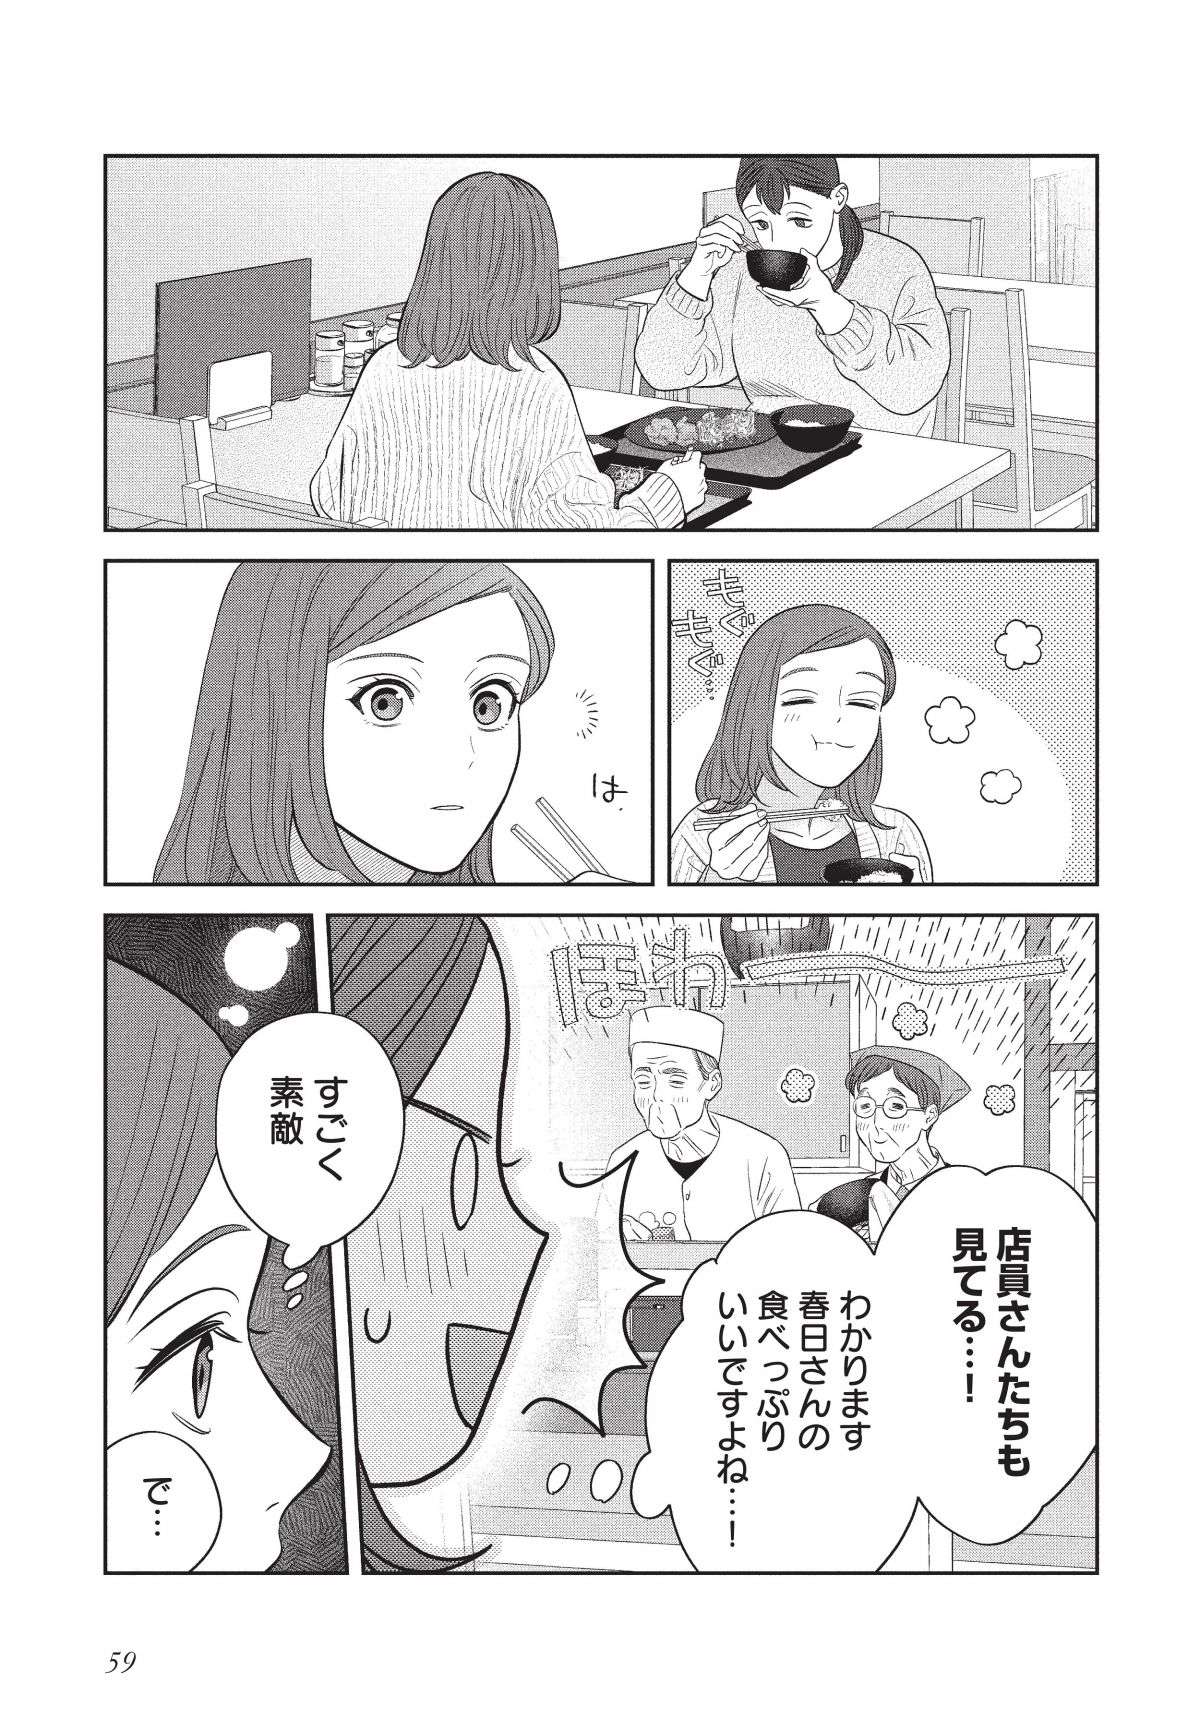 「かわいいんだよなあ」NHKドラマも好評だった「つくたべ」気持ちに気付いた瞬間／作りたい女と食べたい女2 tsukutabe2.4-11.jpg